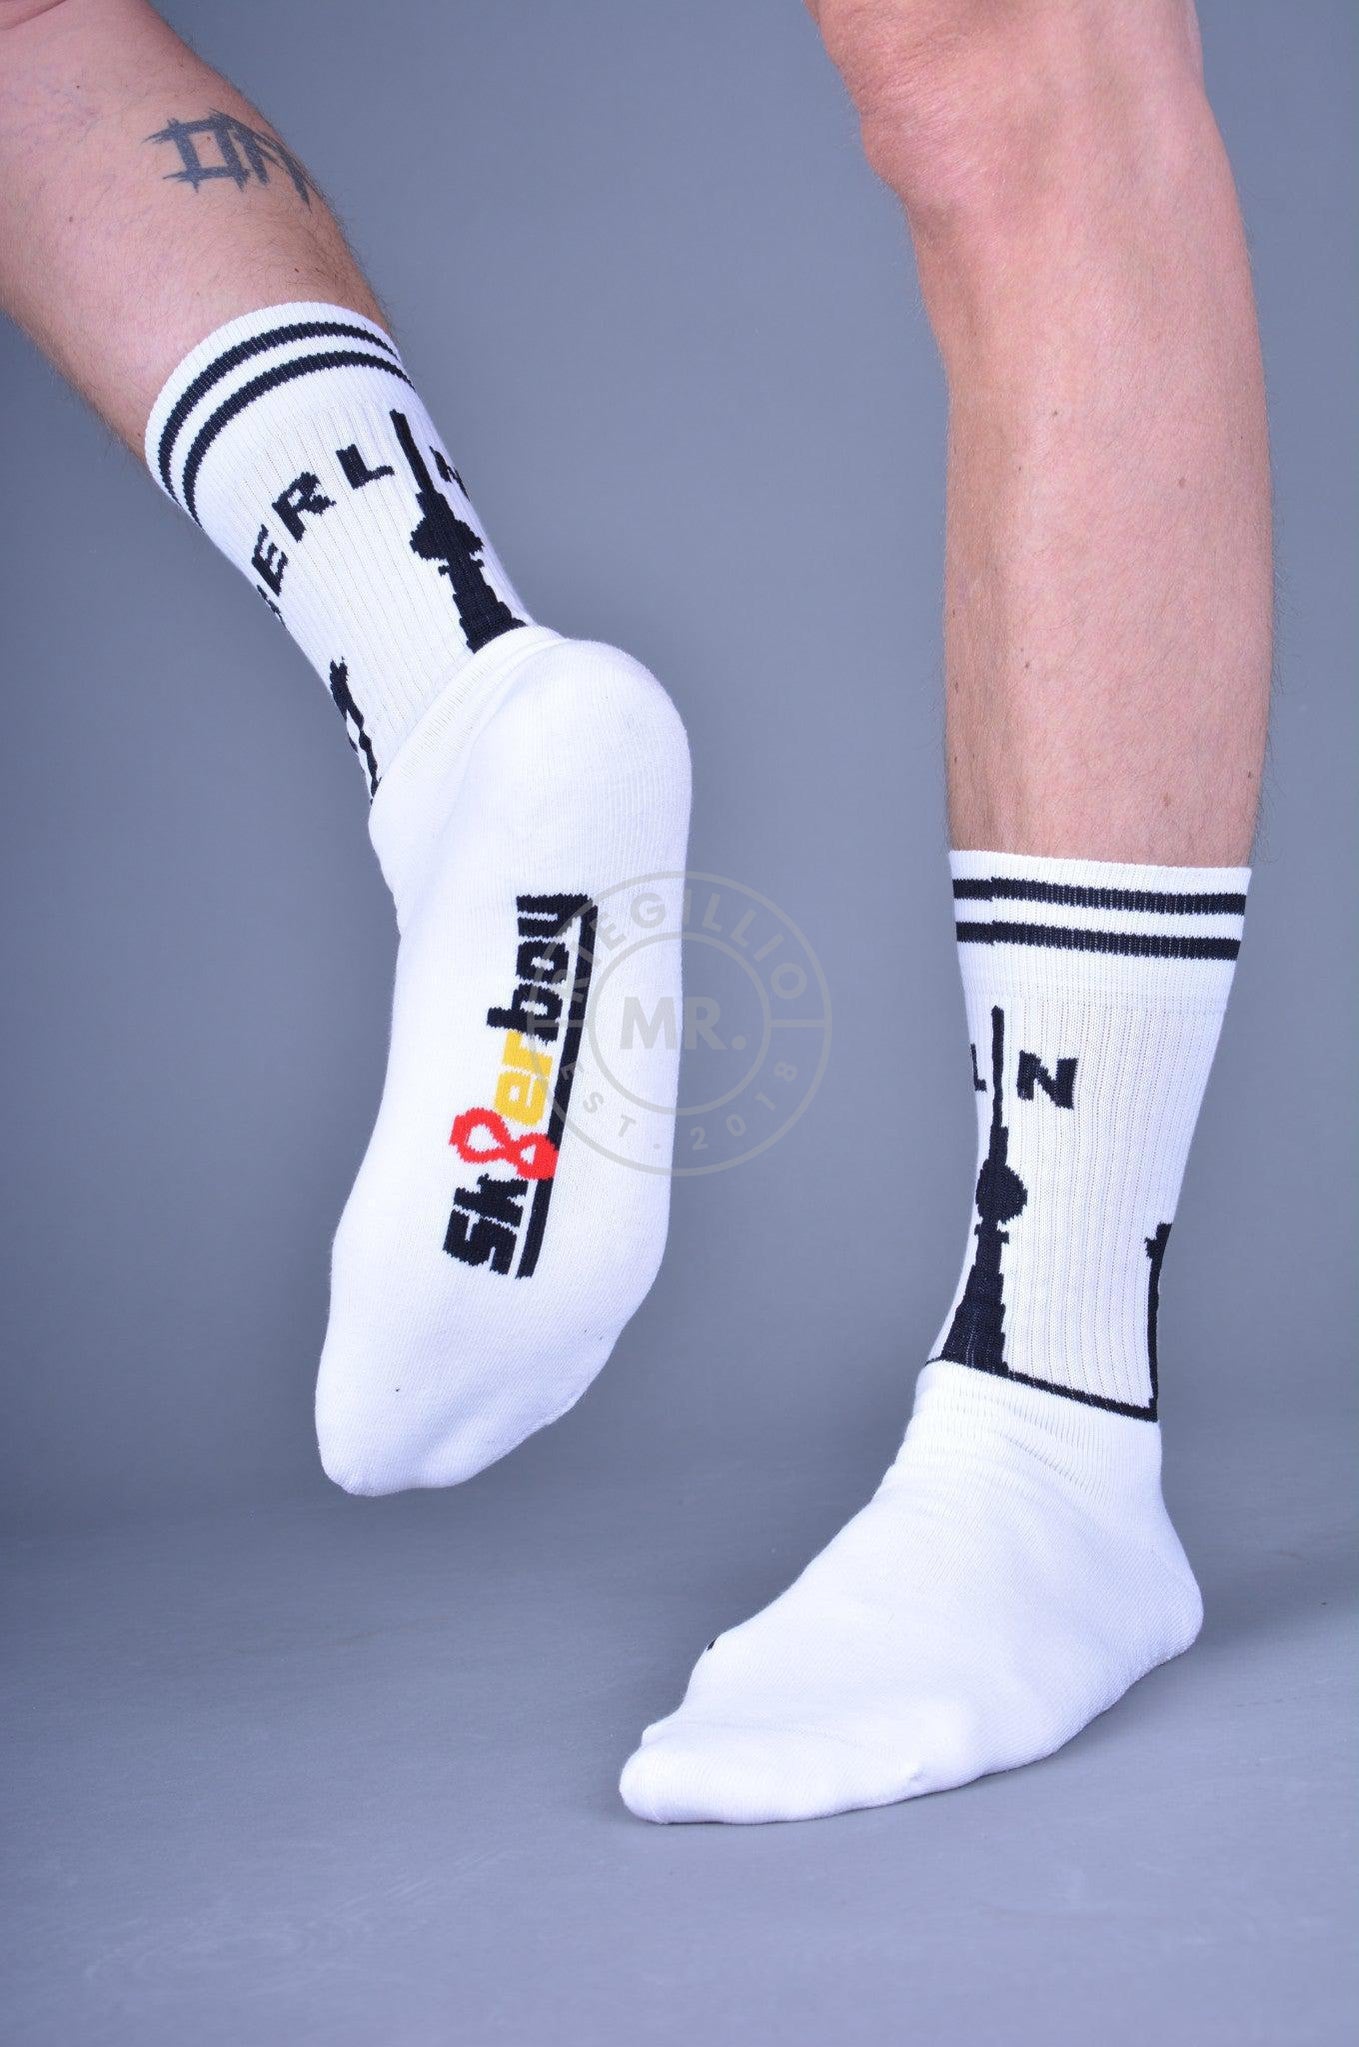 Sk8erboy Berlin Socks-at MR. Riegillio